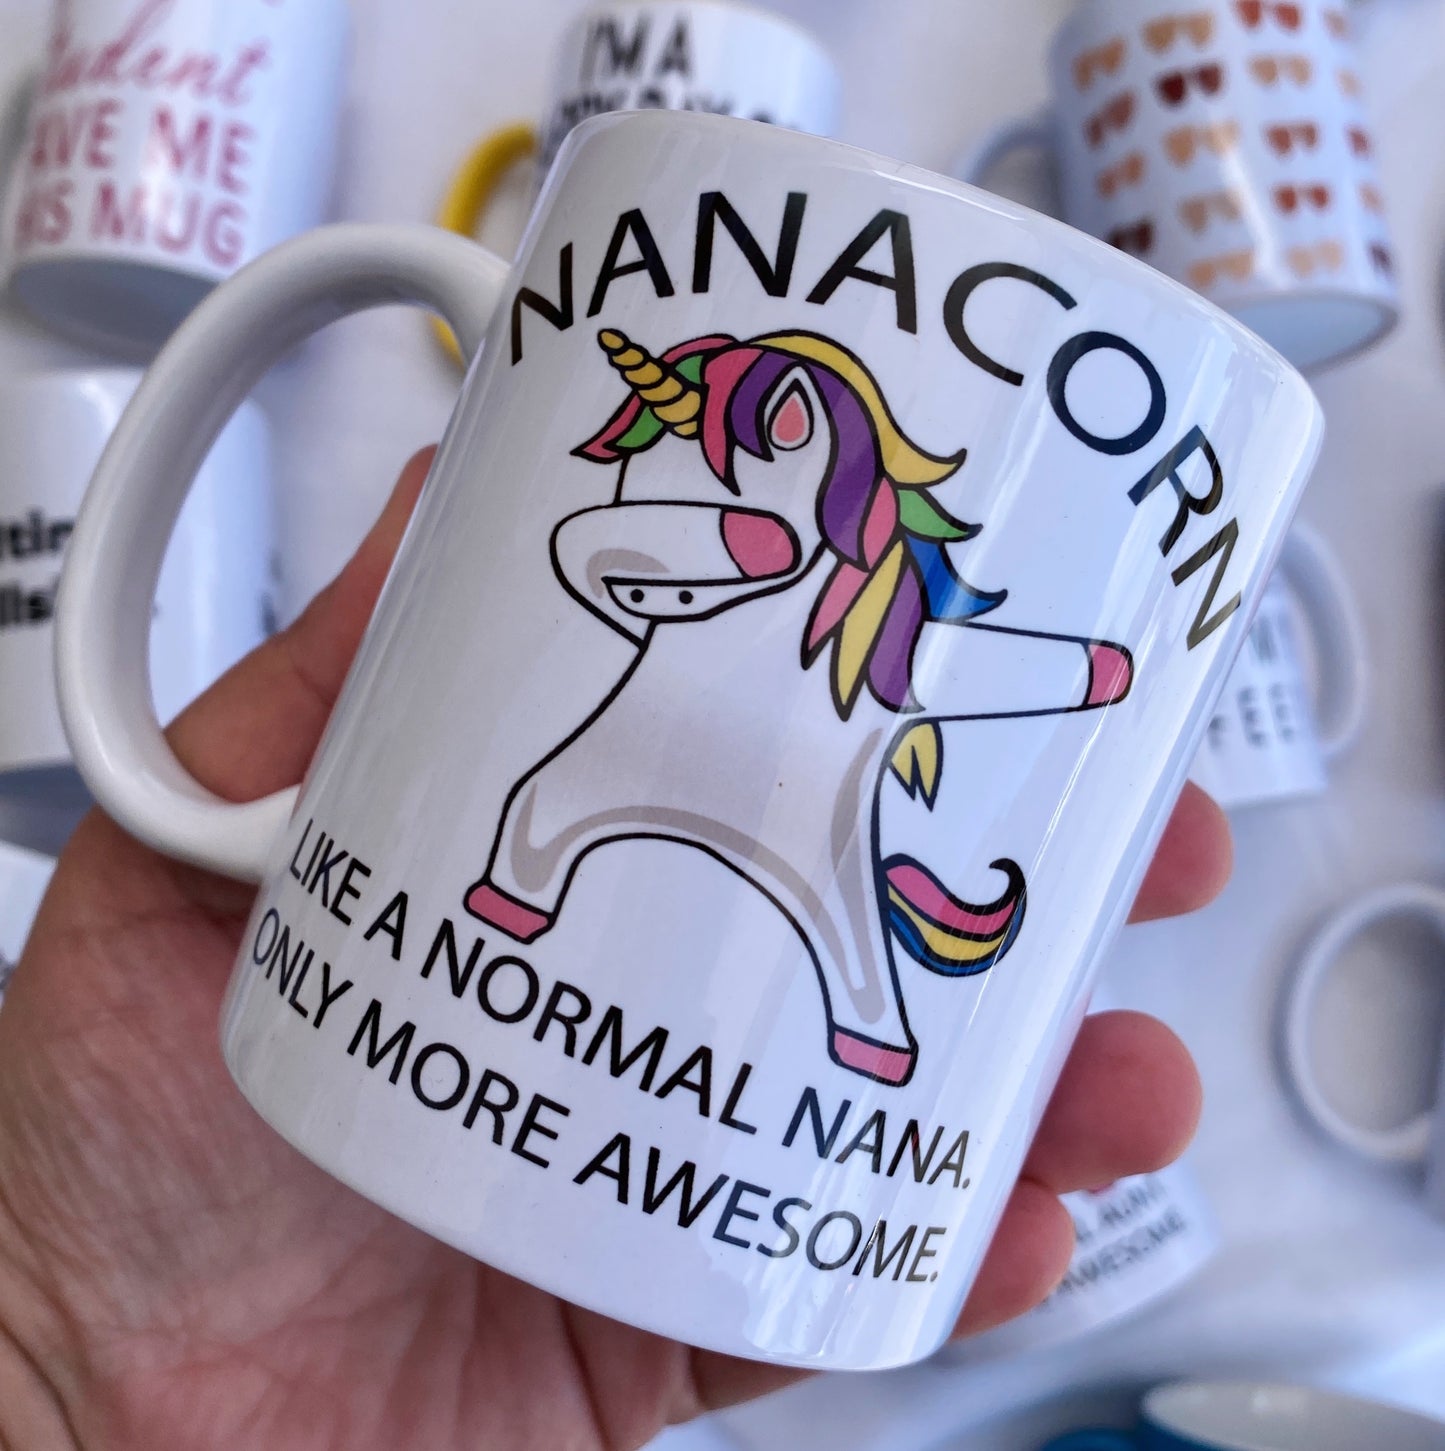 Nanacorn mug